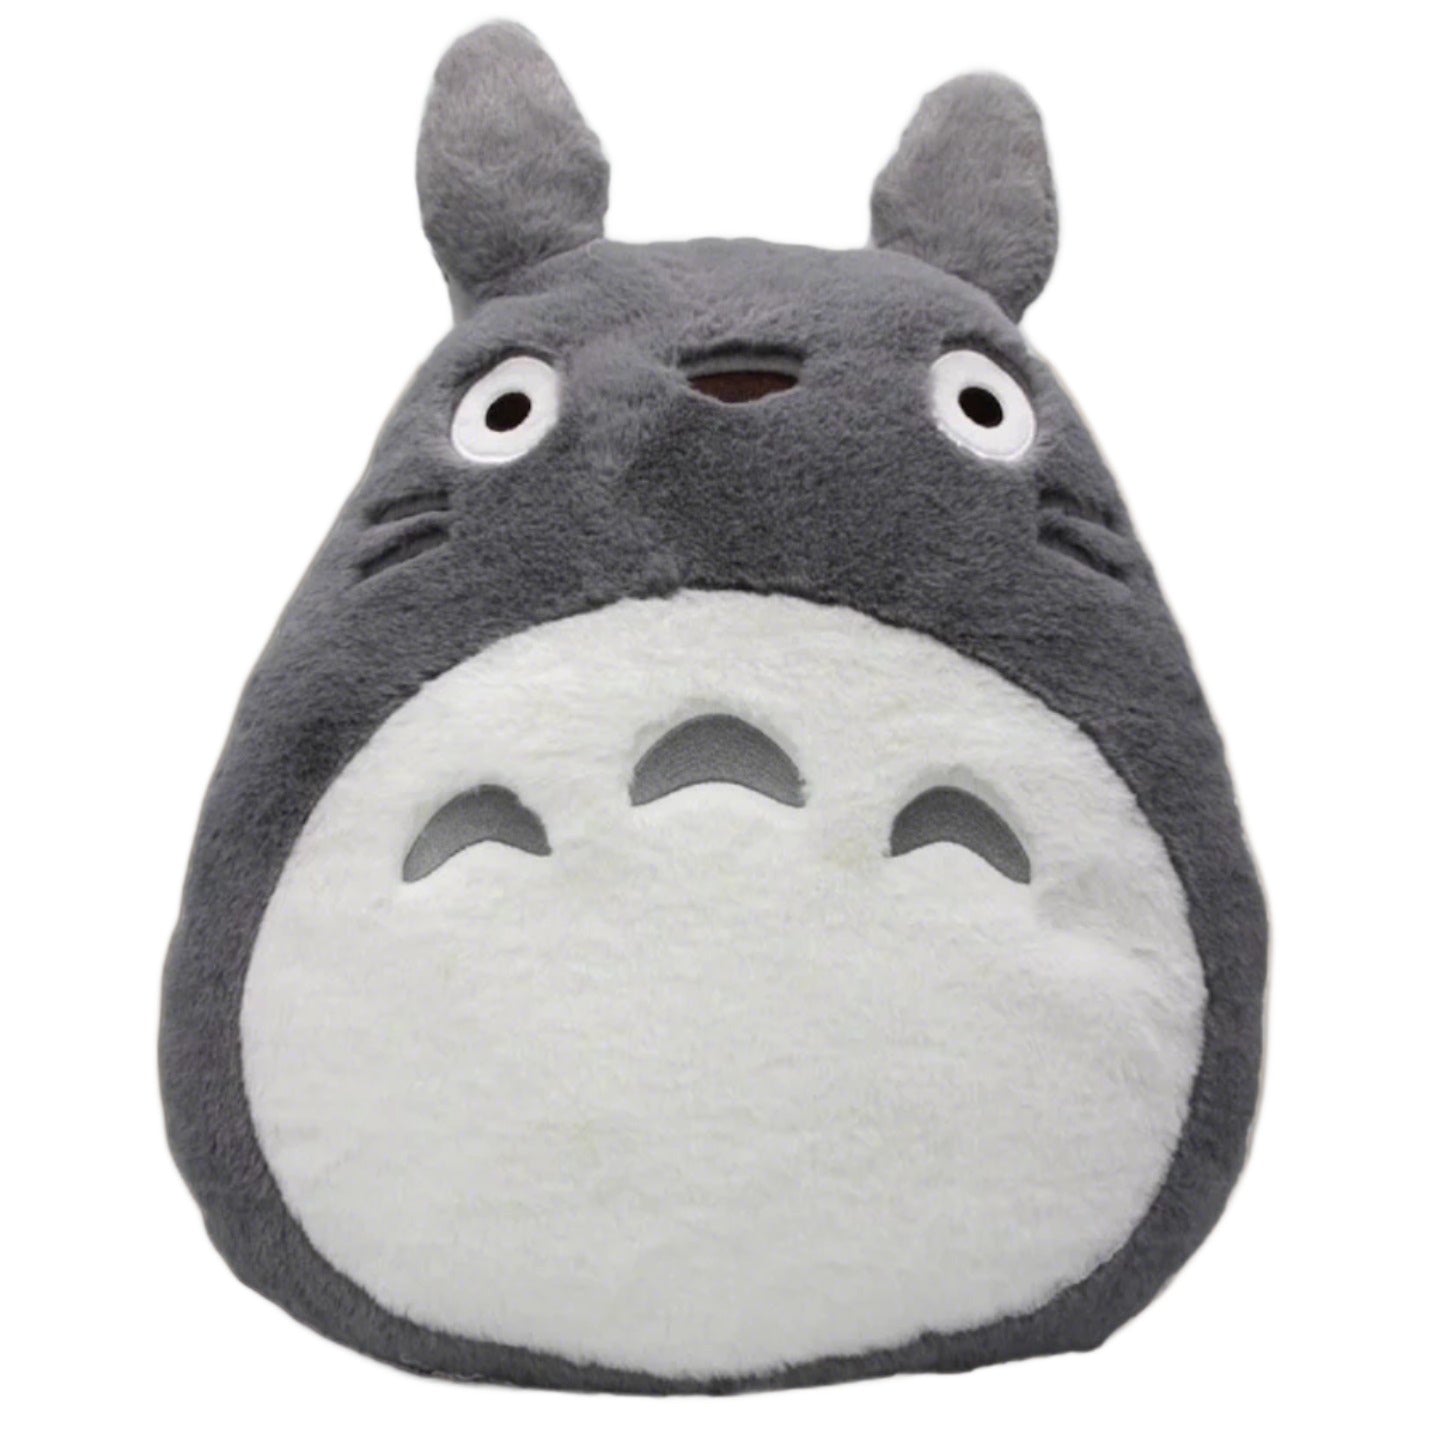 Totoro Cushion - My Neighbor Totoro